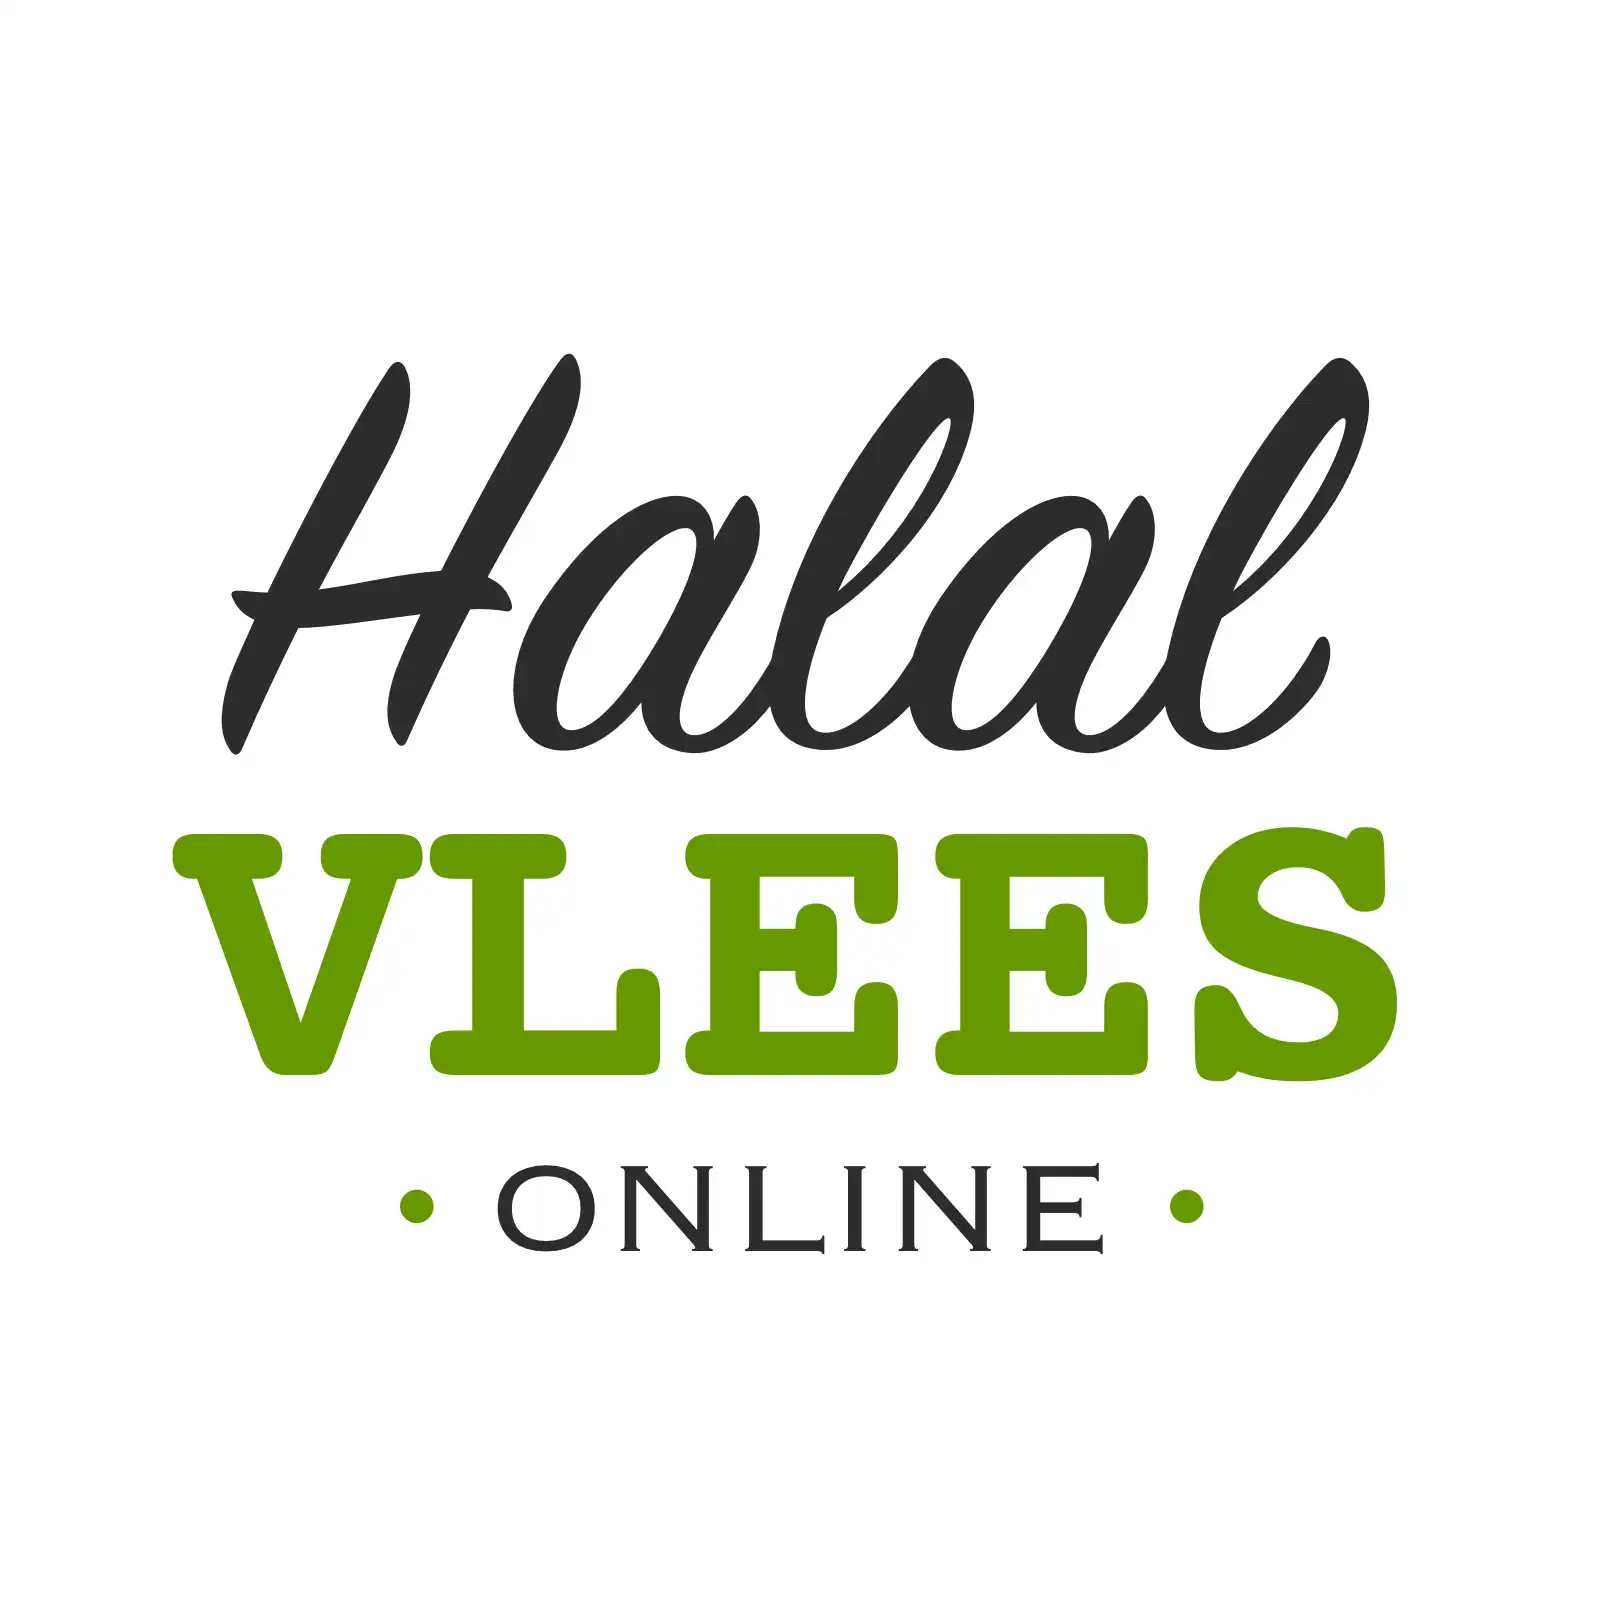 Halalvlees Online